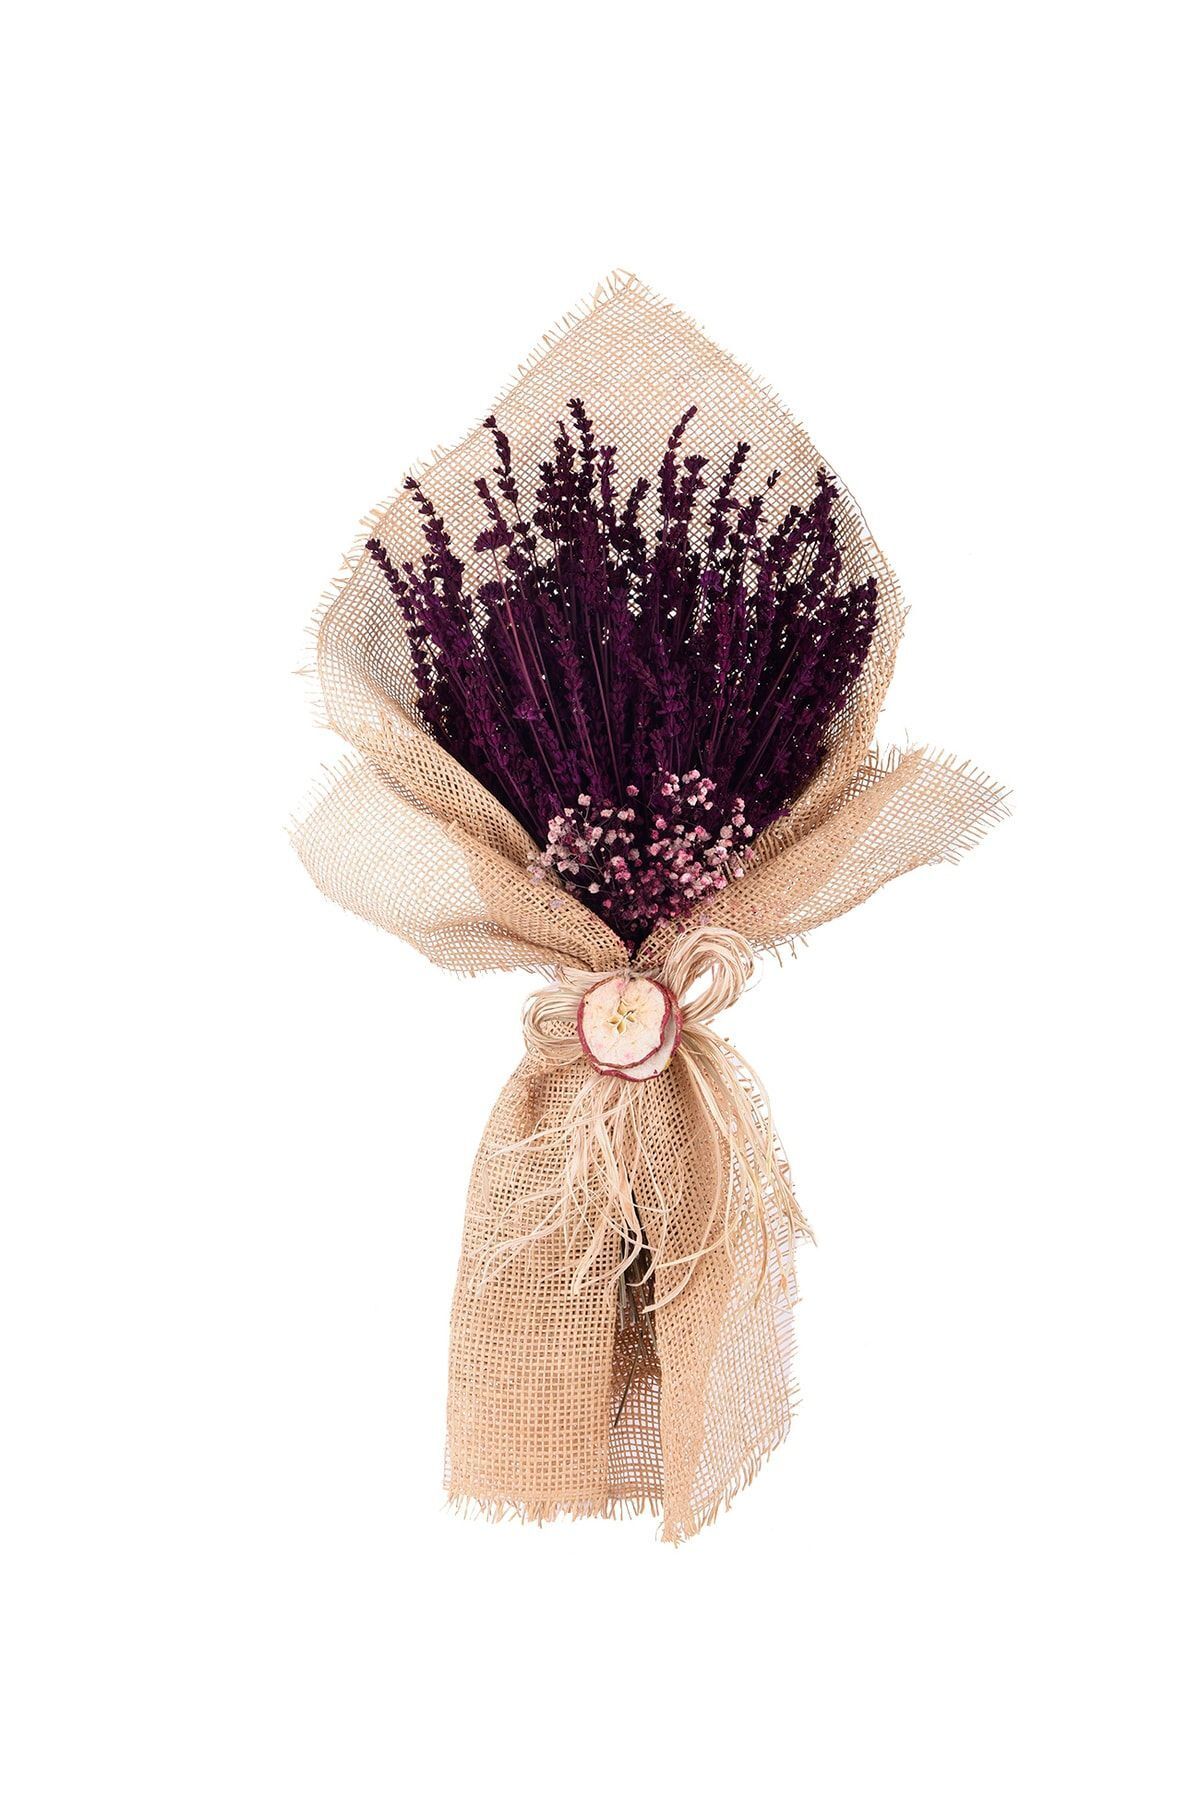 çiçekseli Bordo Lavanta Kuru Çiçek Buketi &kokulu Jut Ambalajlı & Duvar Dekoru & Dekoratif Çiçek 40-45 Cm